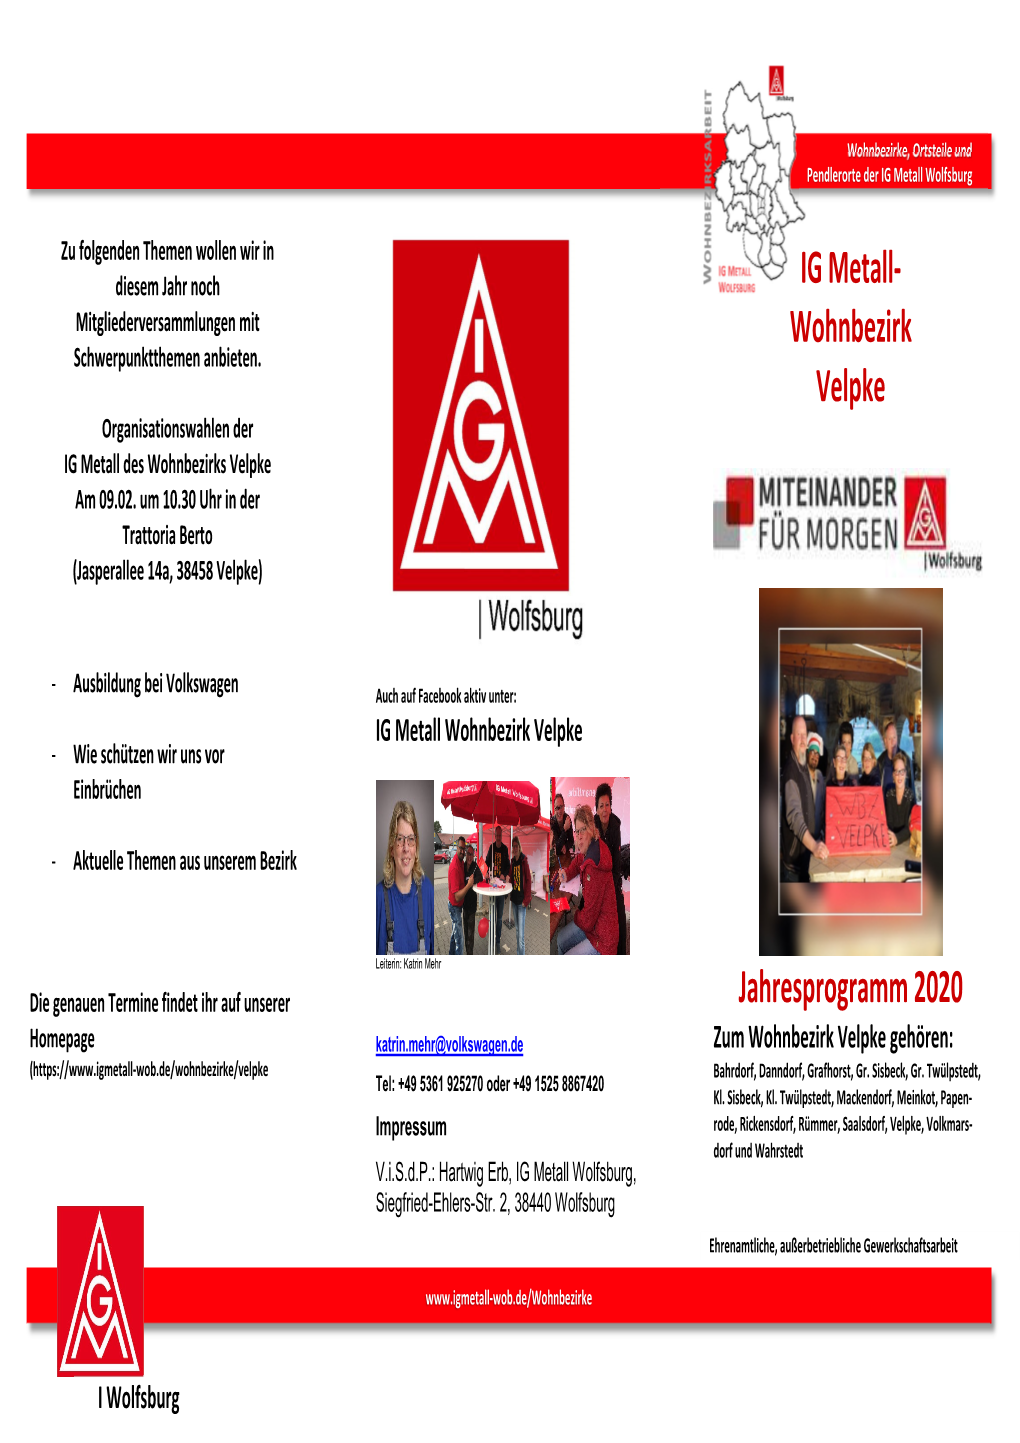 Wohnbezirk Velpke Jahresprogramm 2020